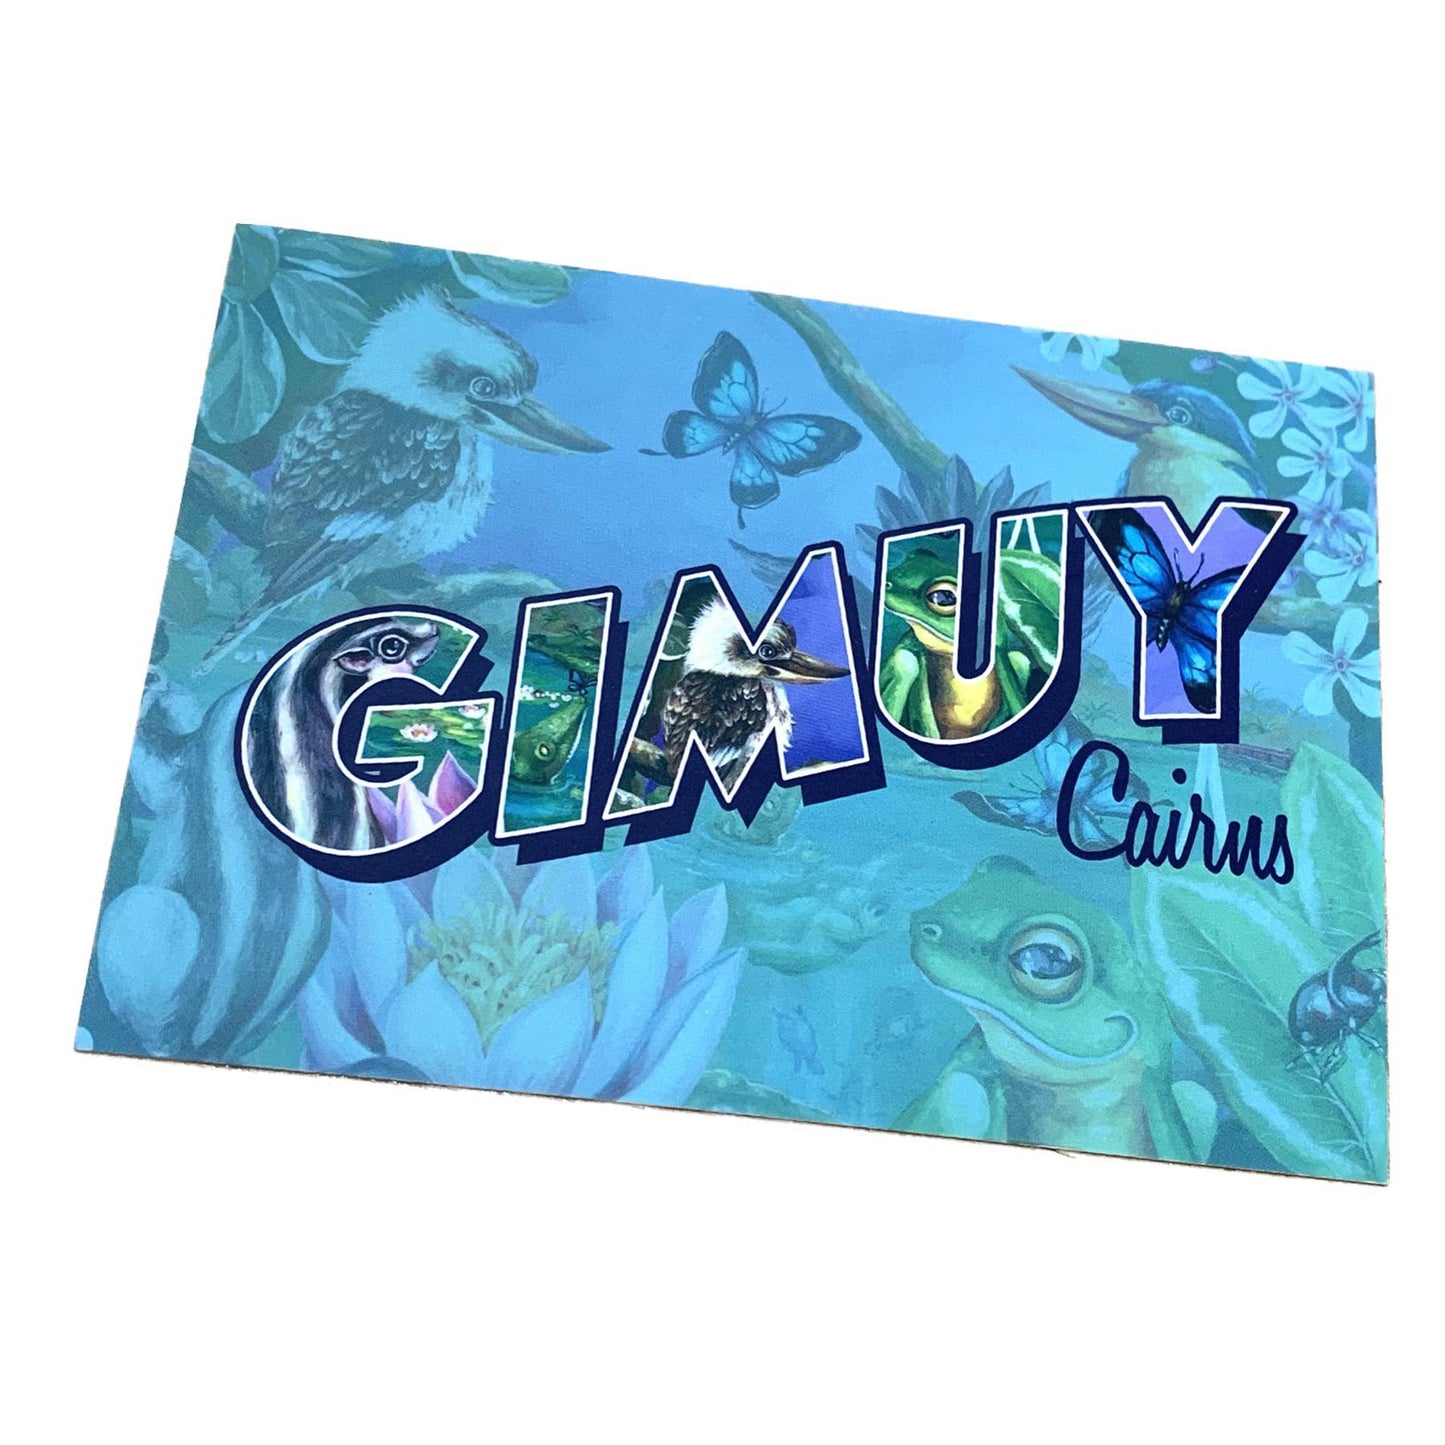 HAYLEY GILLESPIE - CAIRNS QUEENSLAND POSTCARD - "Gimuy" Cairns